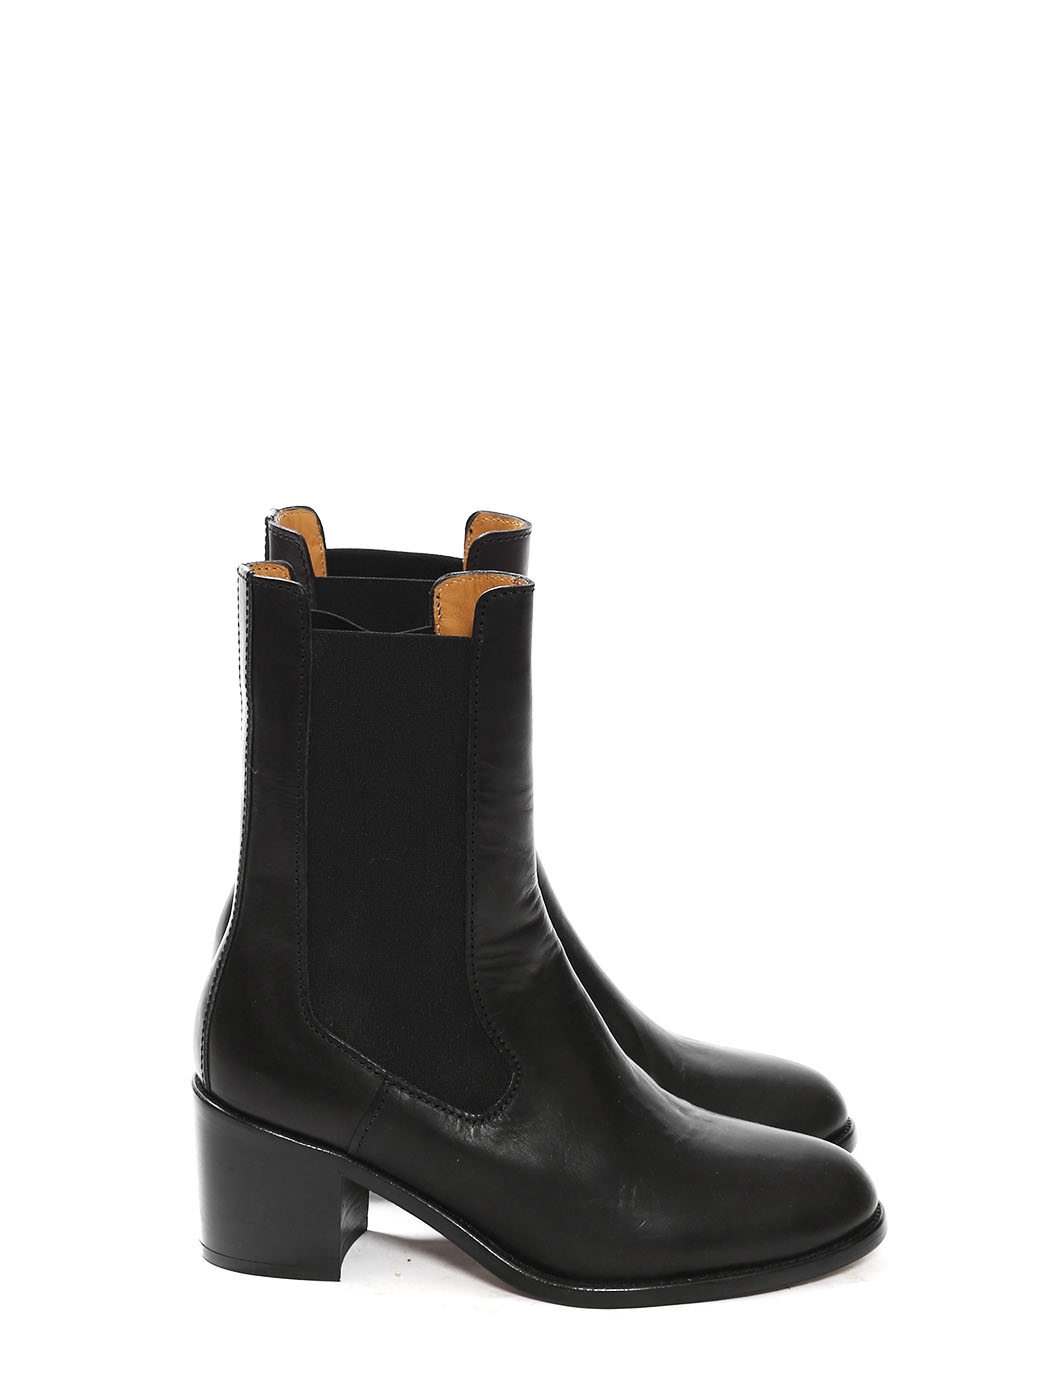 APC Paris NICOLE black leather low heel 